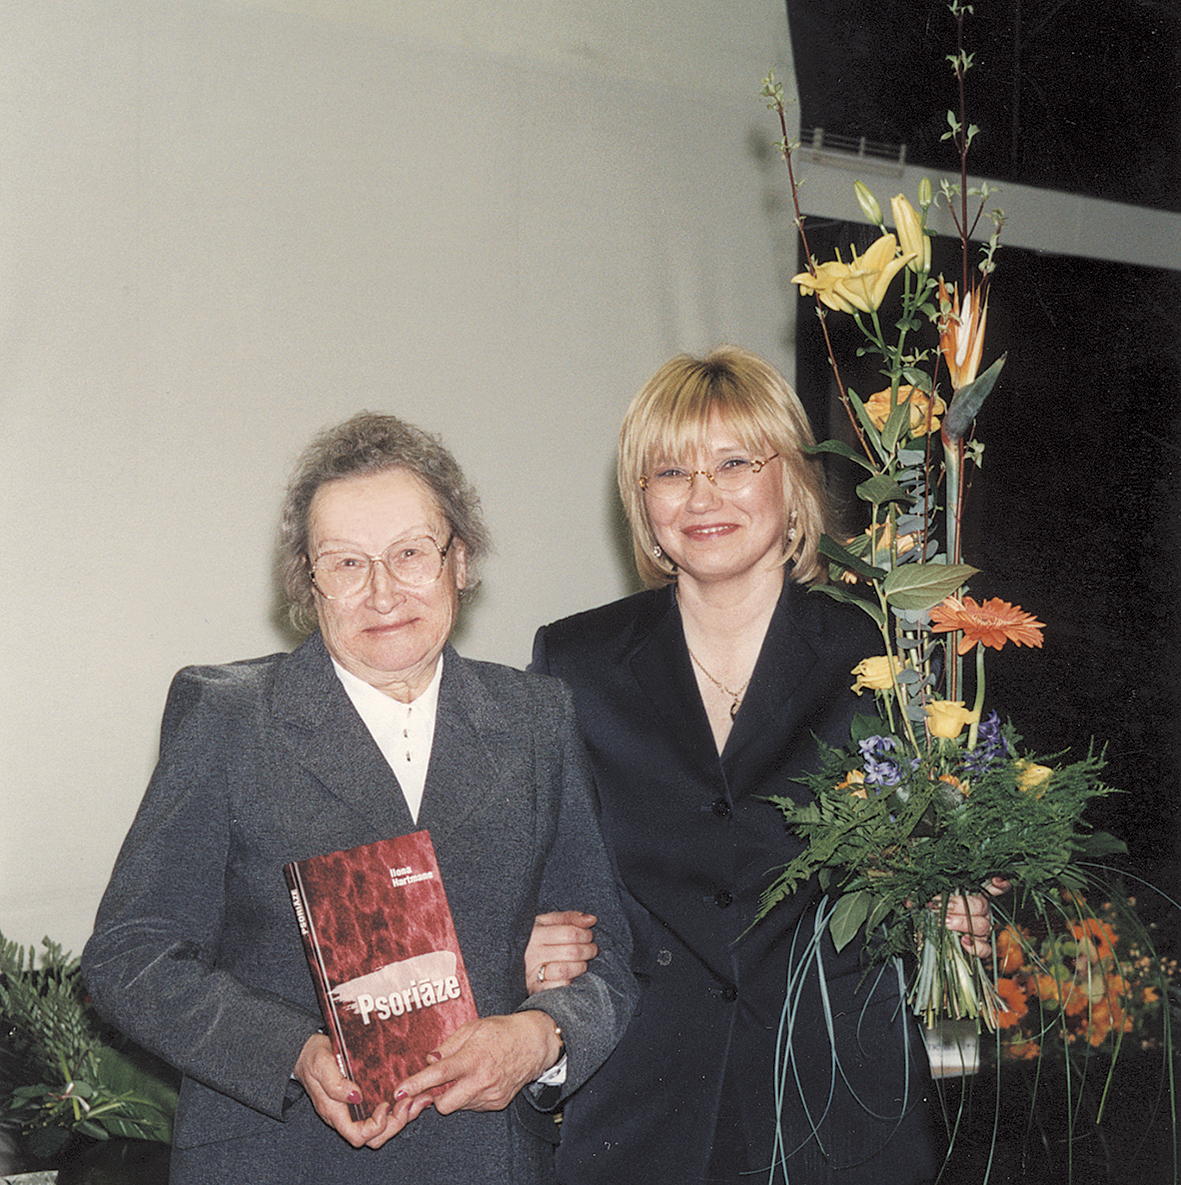 Asoc. prof. Ilona Hartmane savas grāmatas Psoriāze atvēršanas svētkos.  Kopā ar skolotāju profesori Dzidru Brantu